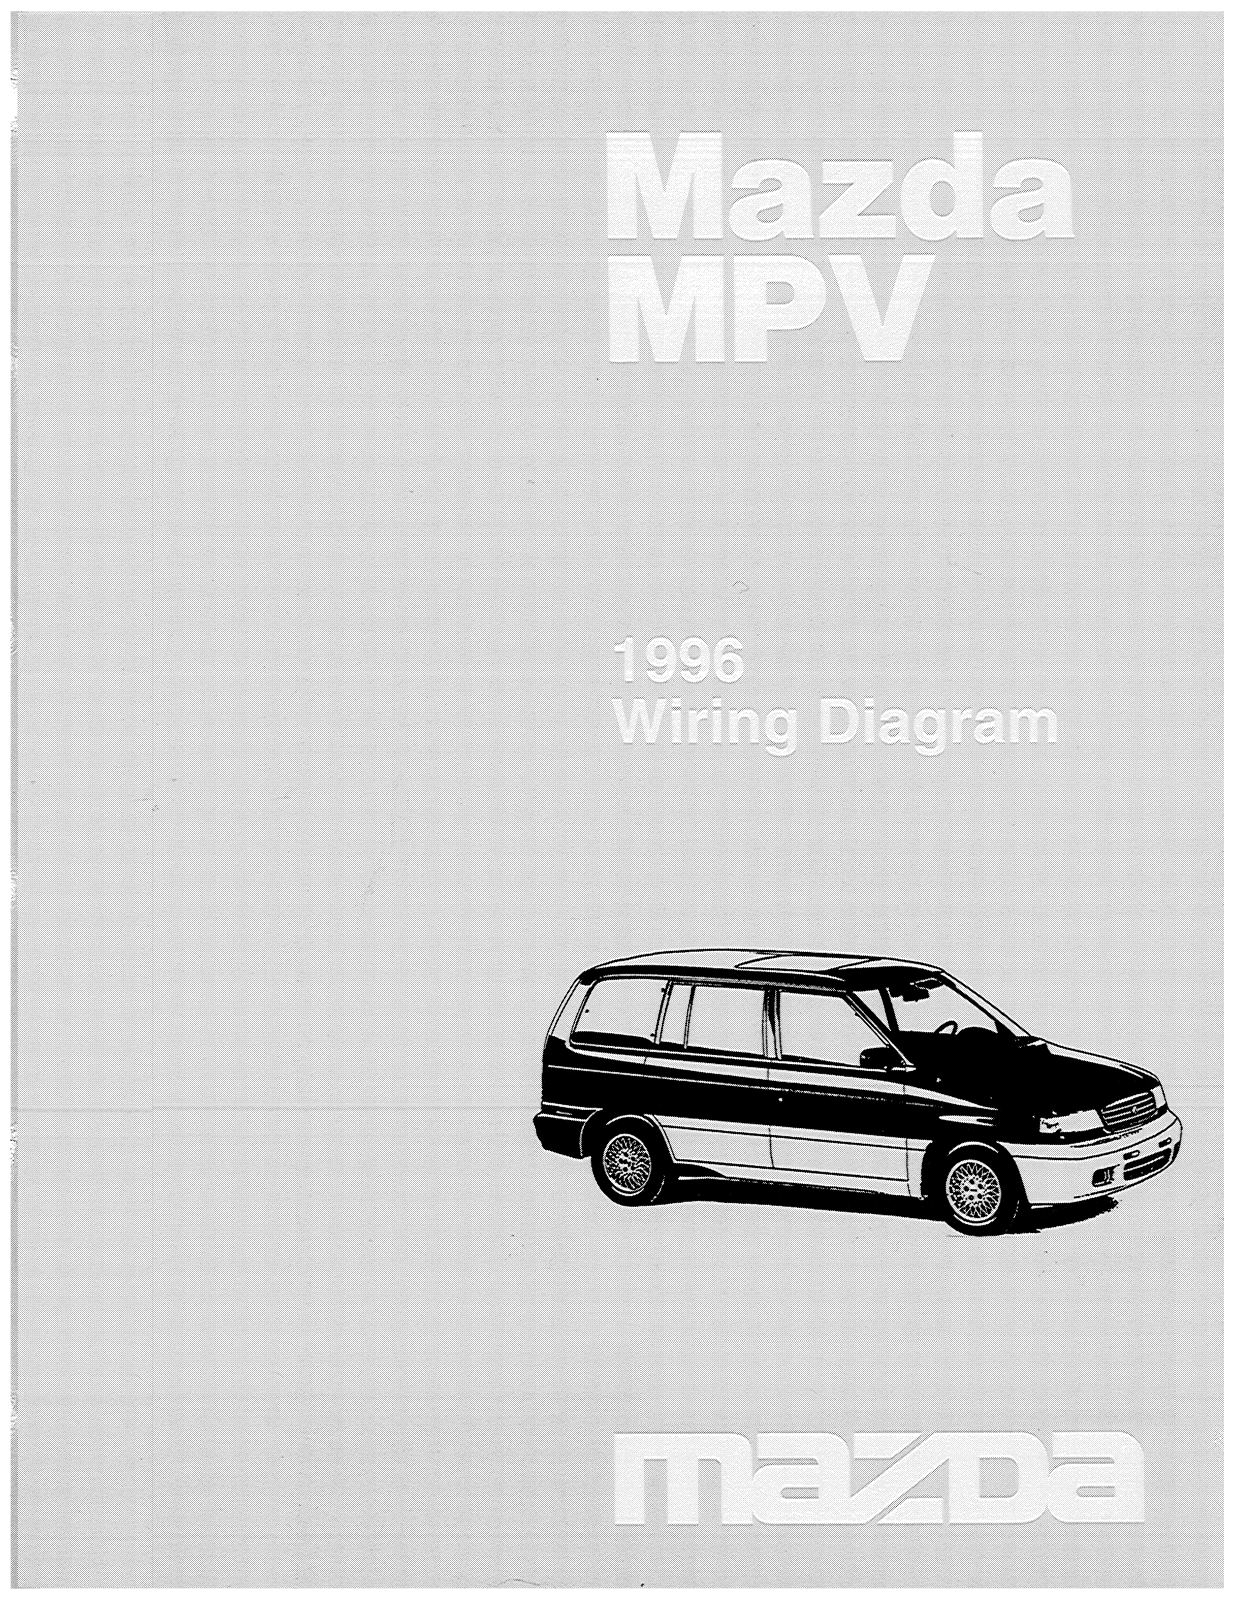 Mazda MPV 1996 User Manual